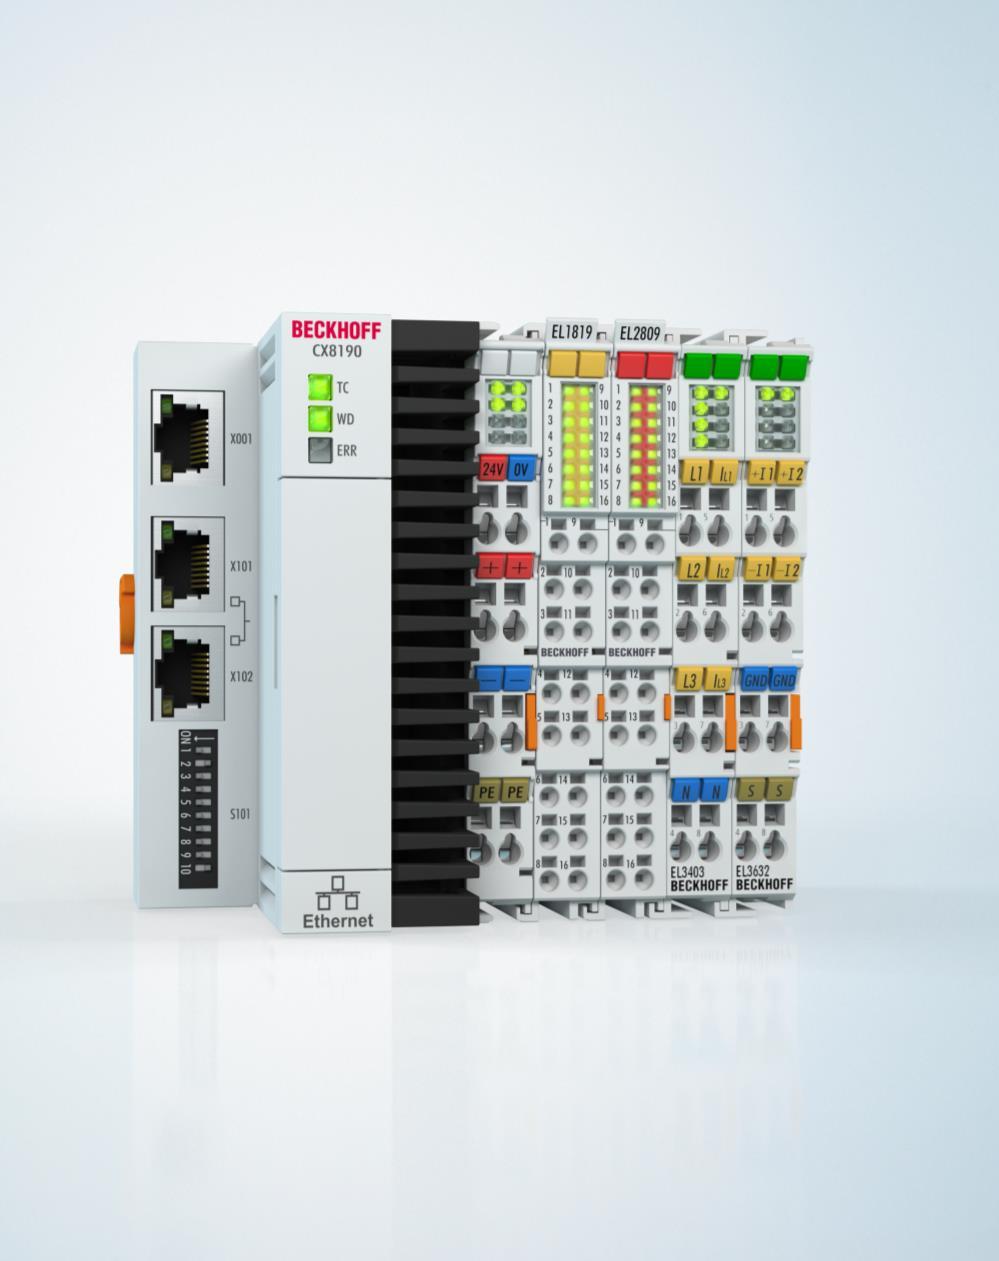 CX8190 Embedded PC pro Ethernet ARM Cortex -A9, 600 MHz 512 MB microsd (s možností rozšíření), 1 x microsd slot 512 MB DDR3 RAM 1 x RJ45 (Ethernet), 2 x RJ45